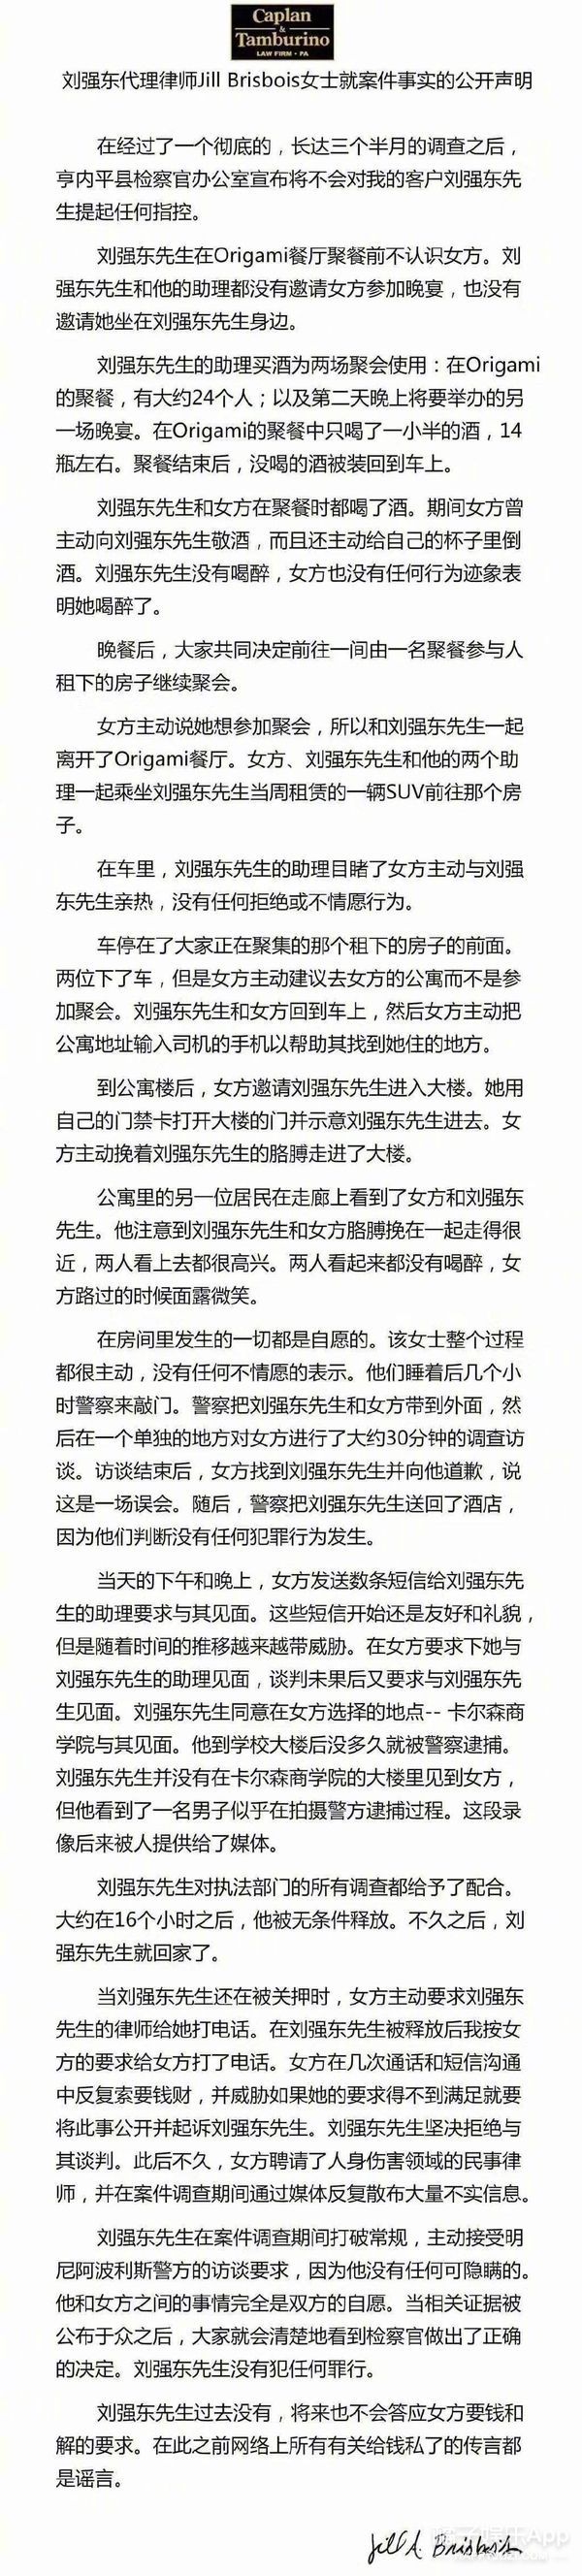 刘强东承认发生关系但全程女方主动…这解释奶茶接受吗